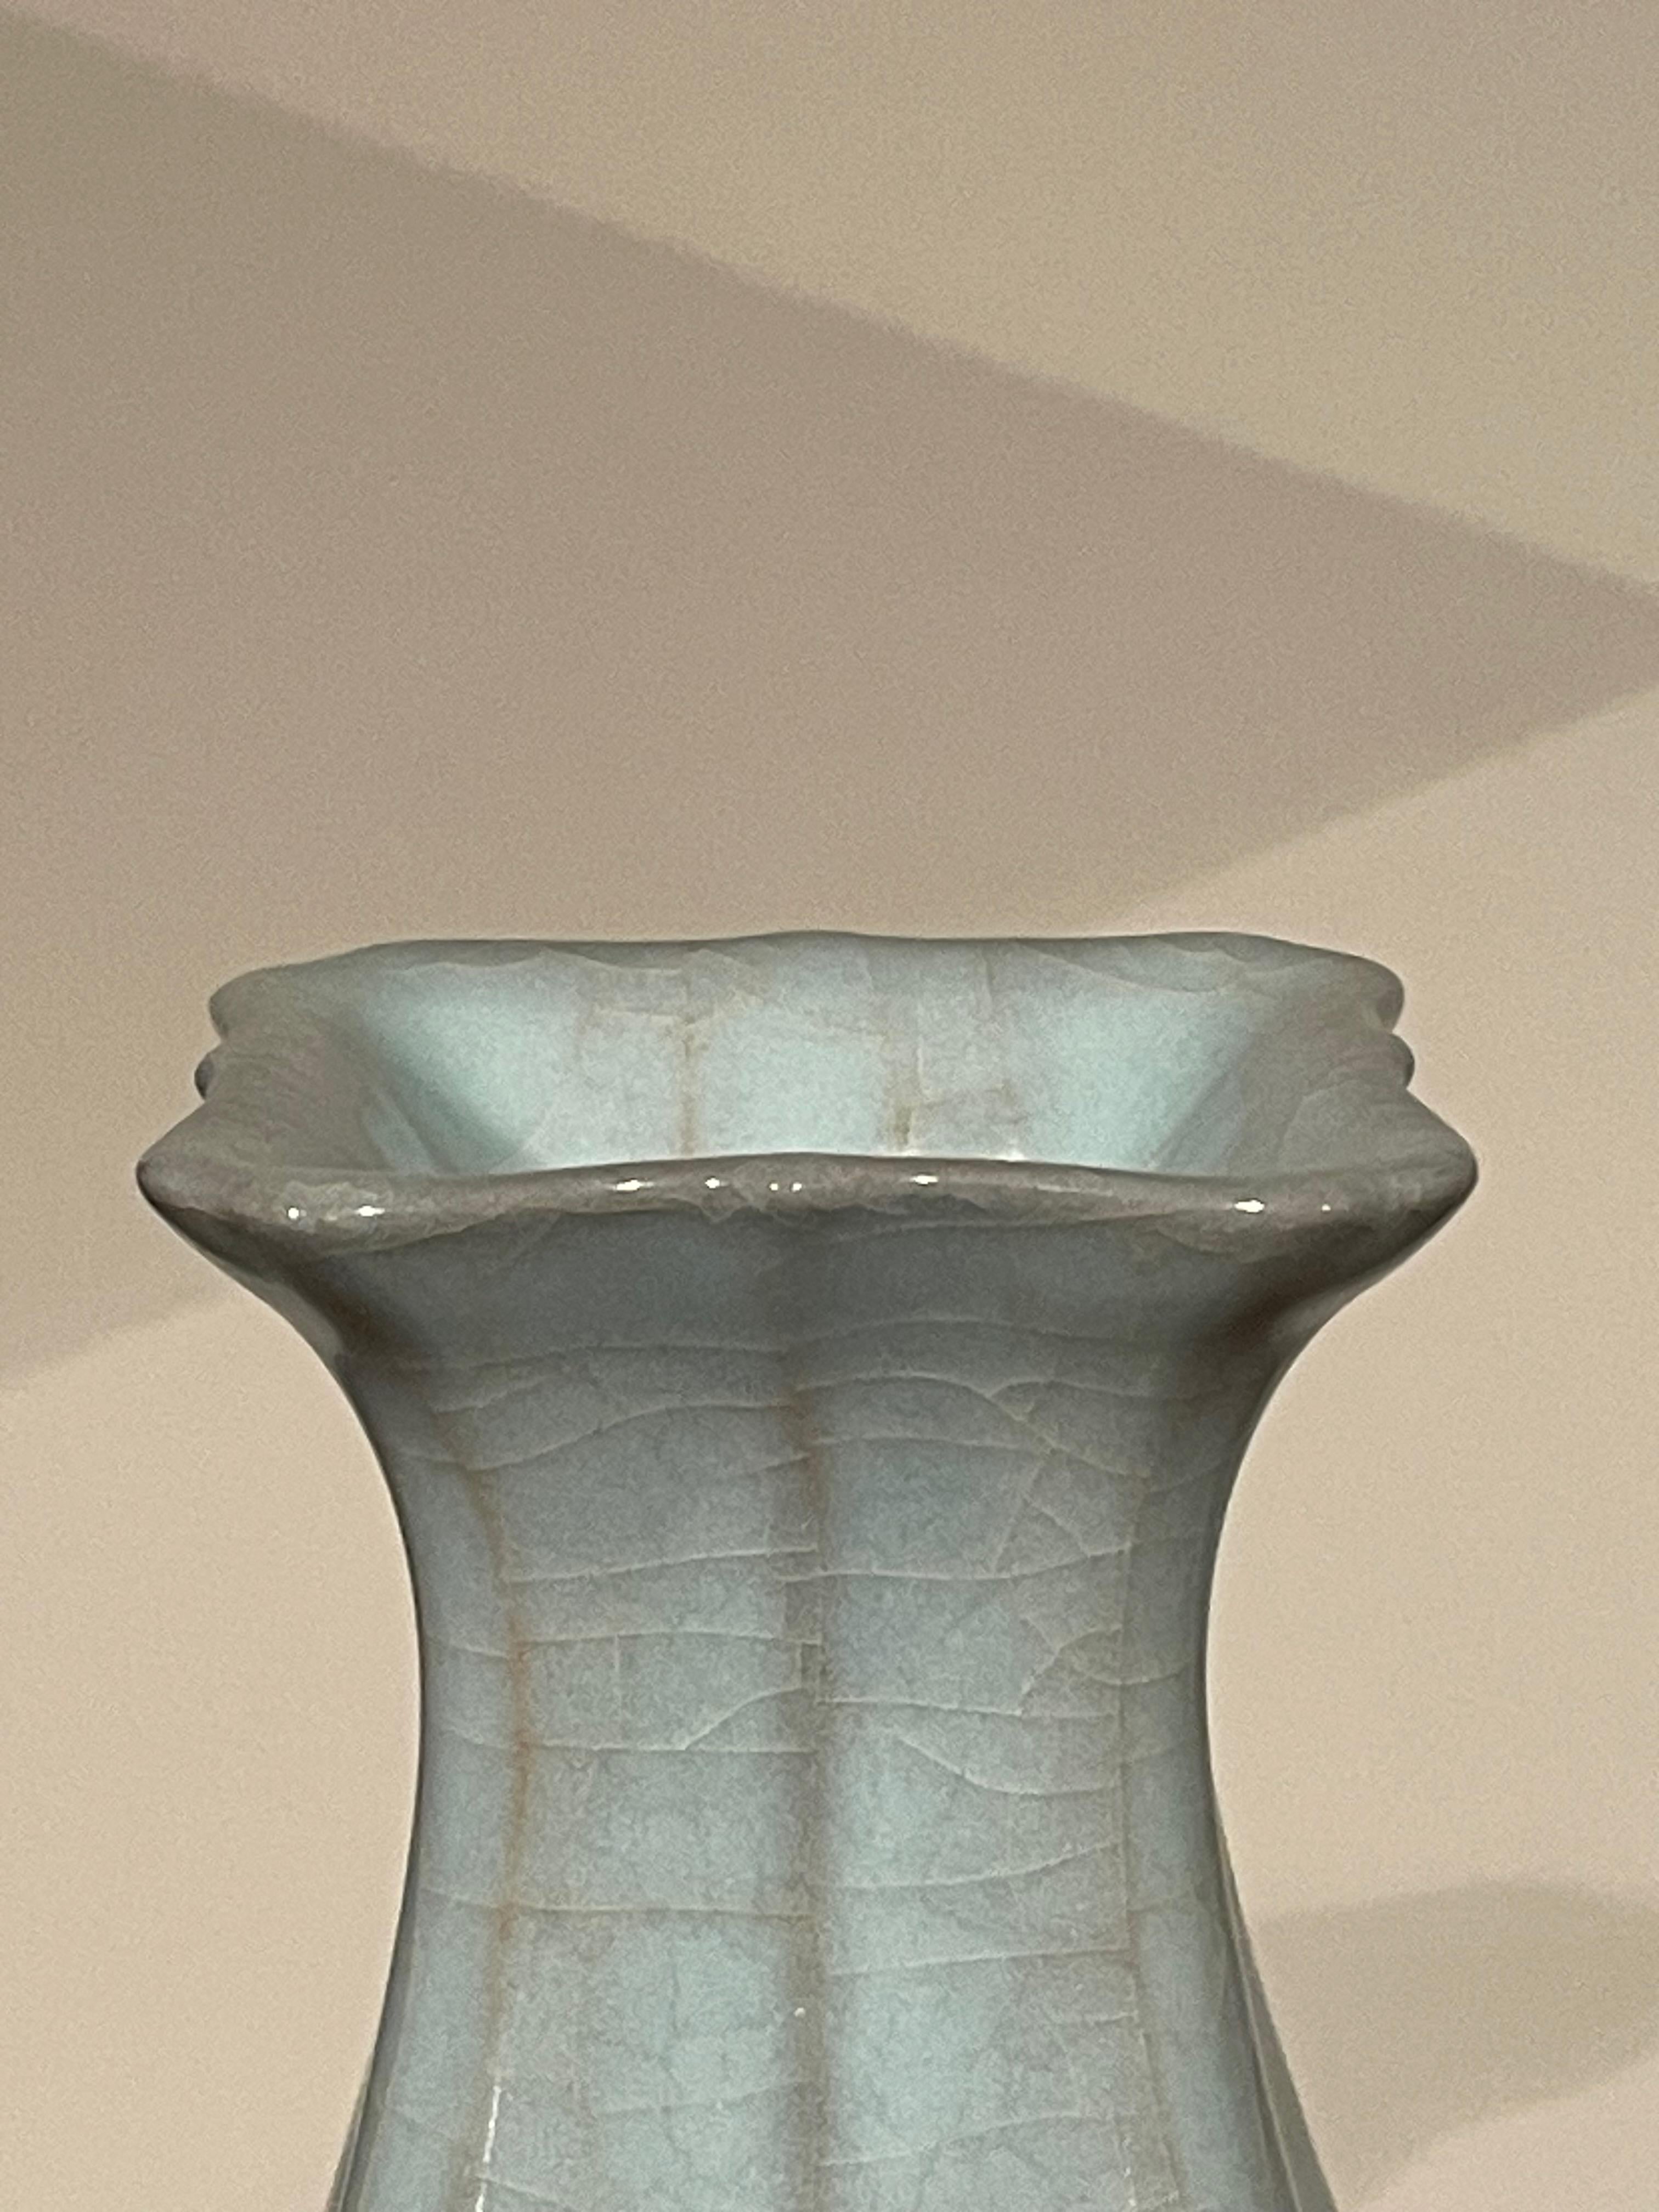 Vase contemporain chinois de couleur turquoise pâle.
Dessus carré avec coins nervurés.
Une large collection est disponible avec des tailles et des formes variées.
ARRIVÉE AVRIL